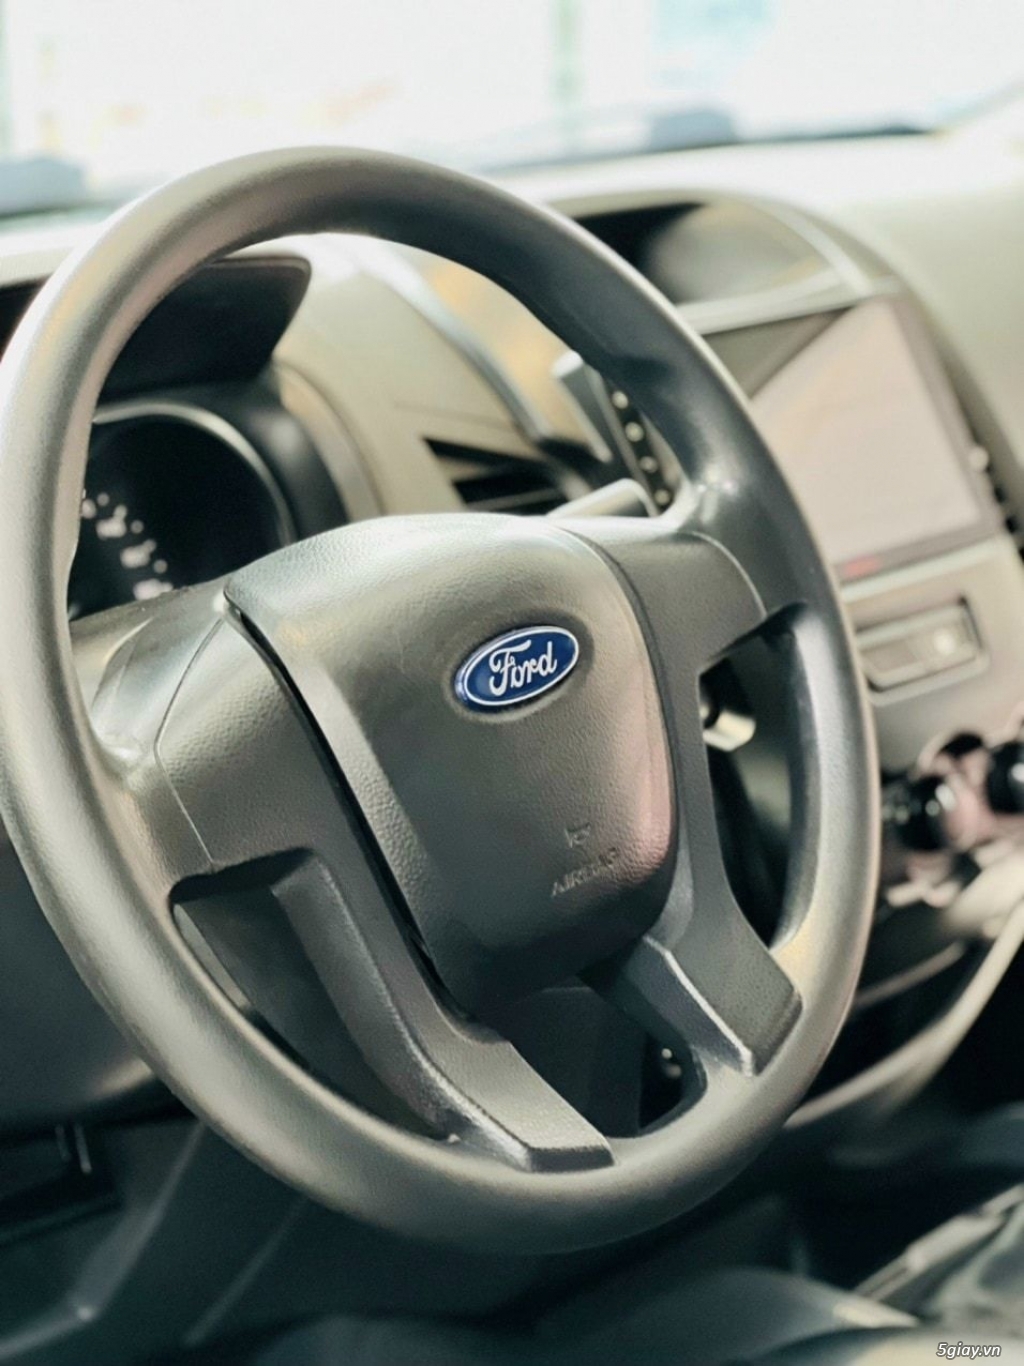 Ford ranger XLS 2015 có hoá đơn cho công ty - 4